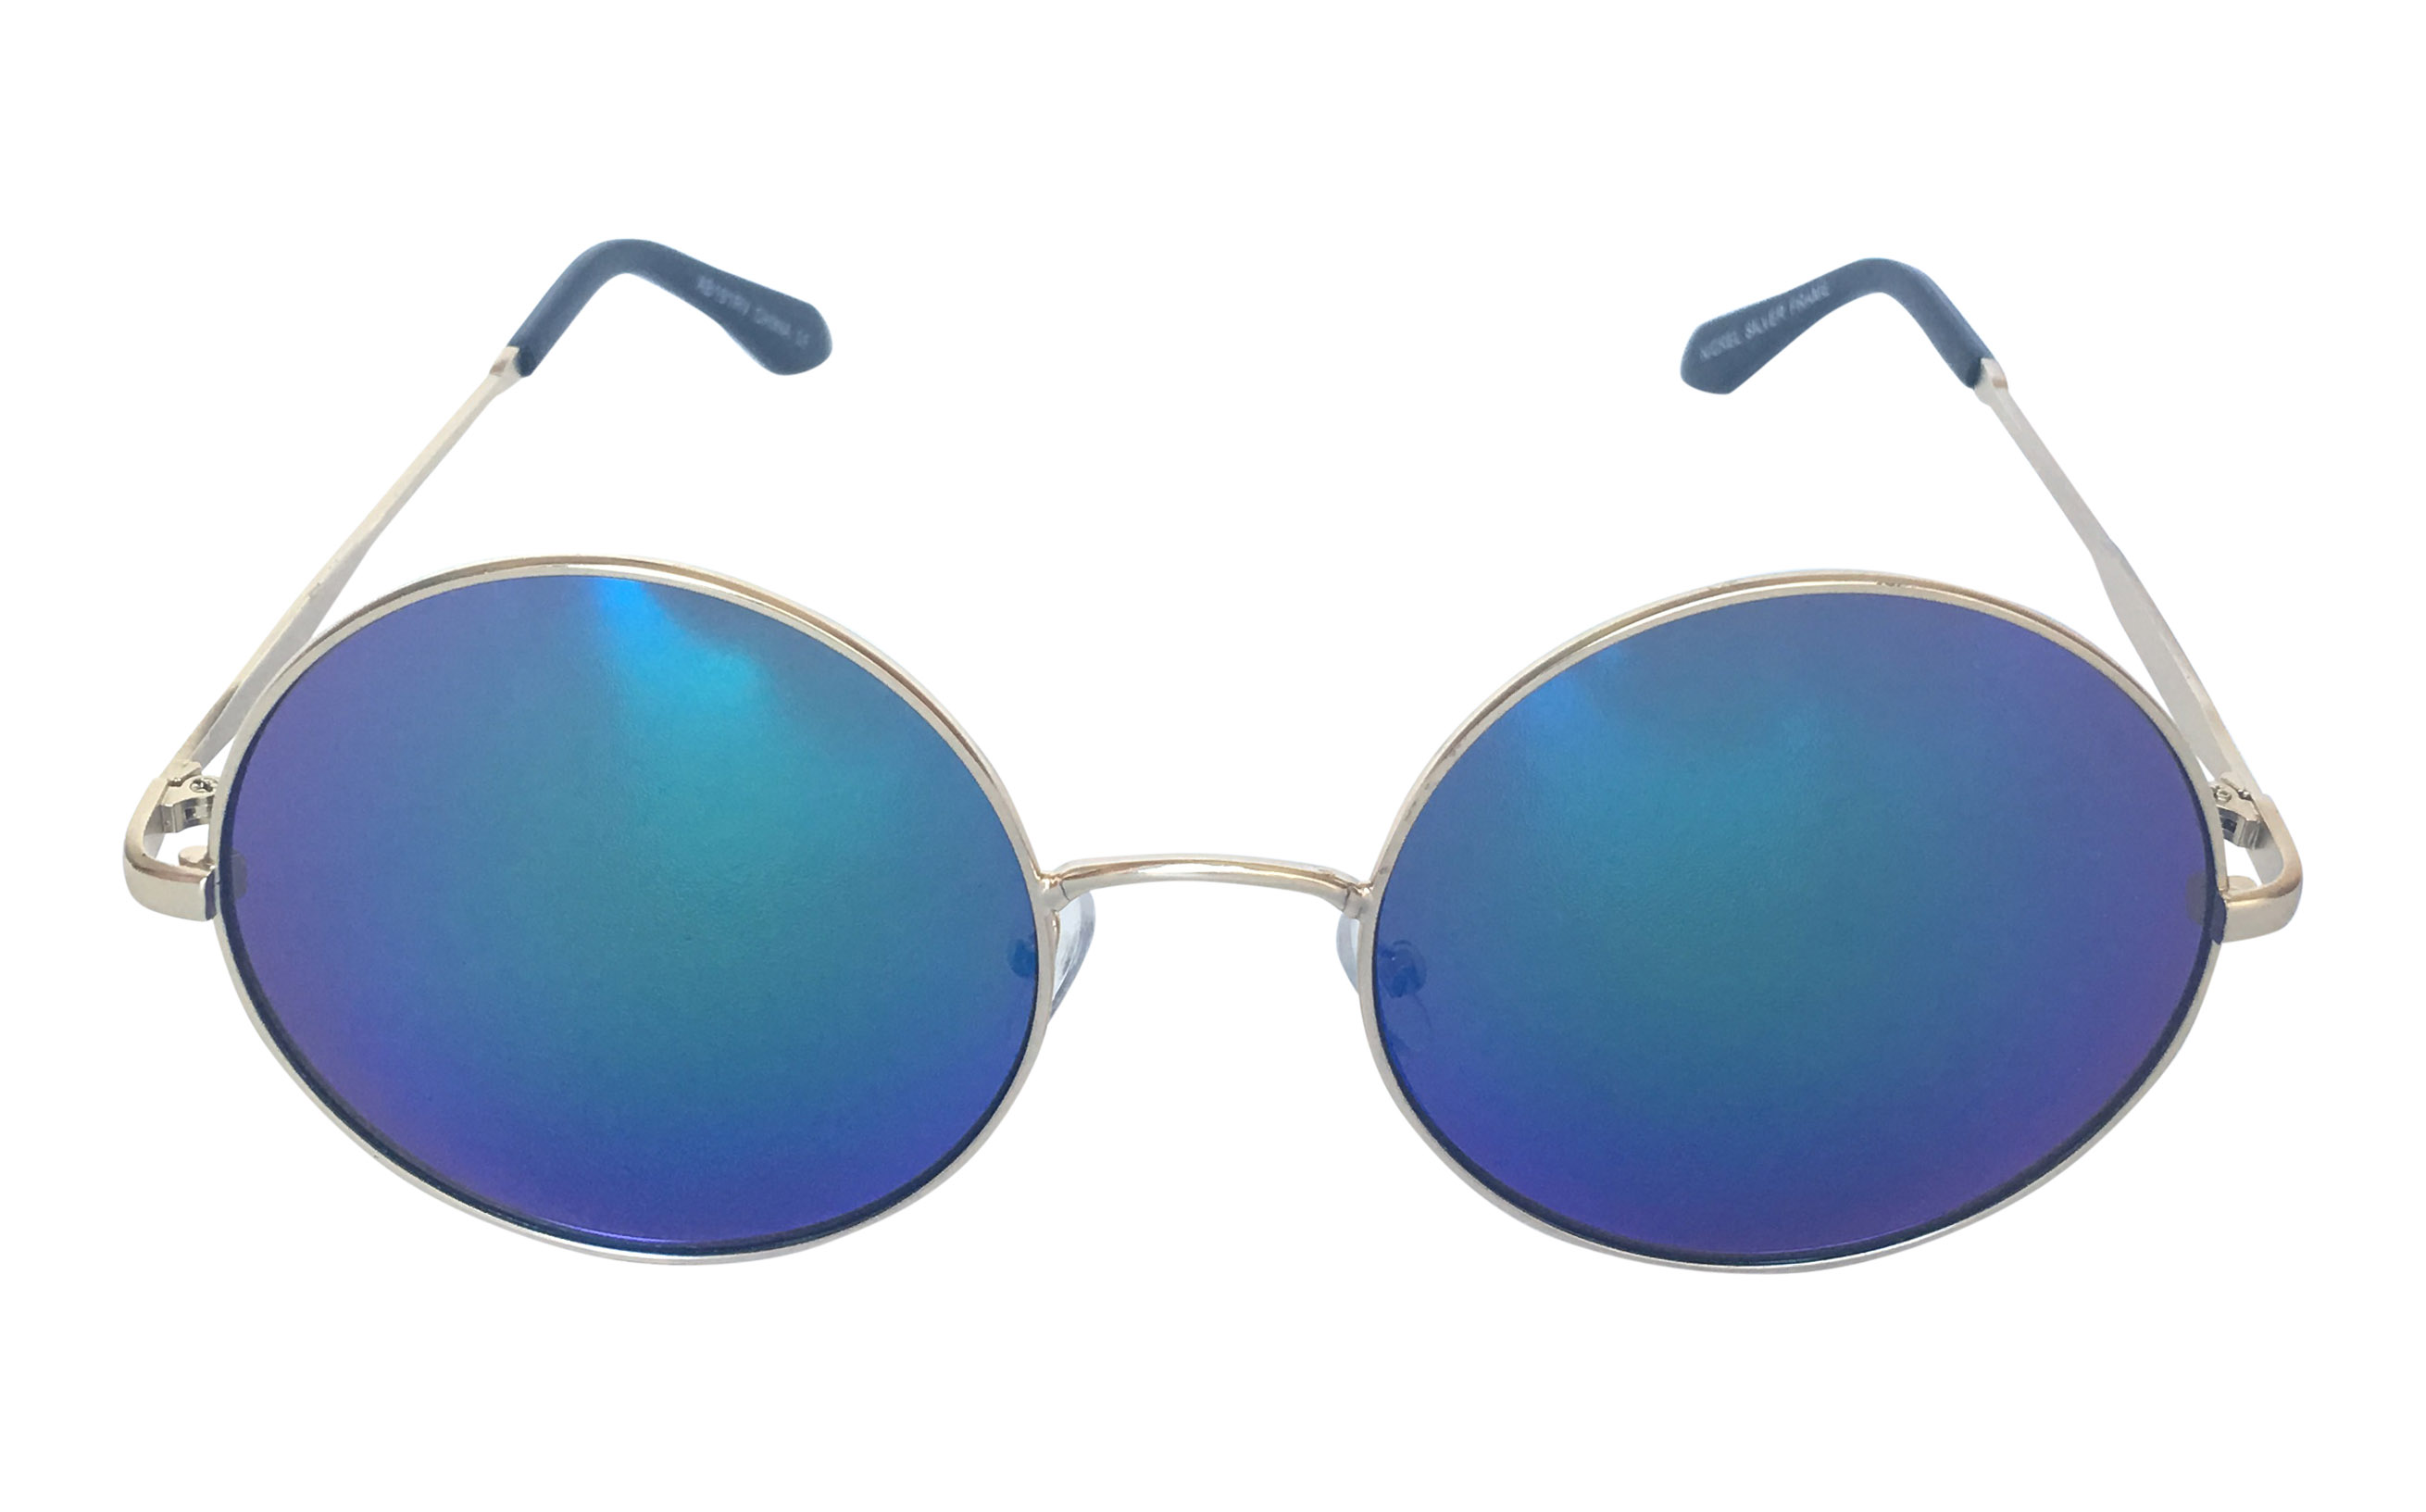 Flot stor rund solbrille med blå-grønne glas - Design nr. s3299